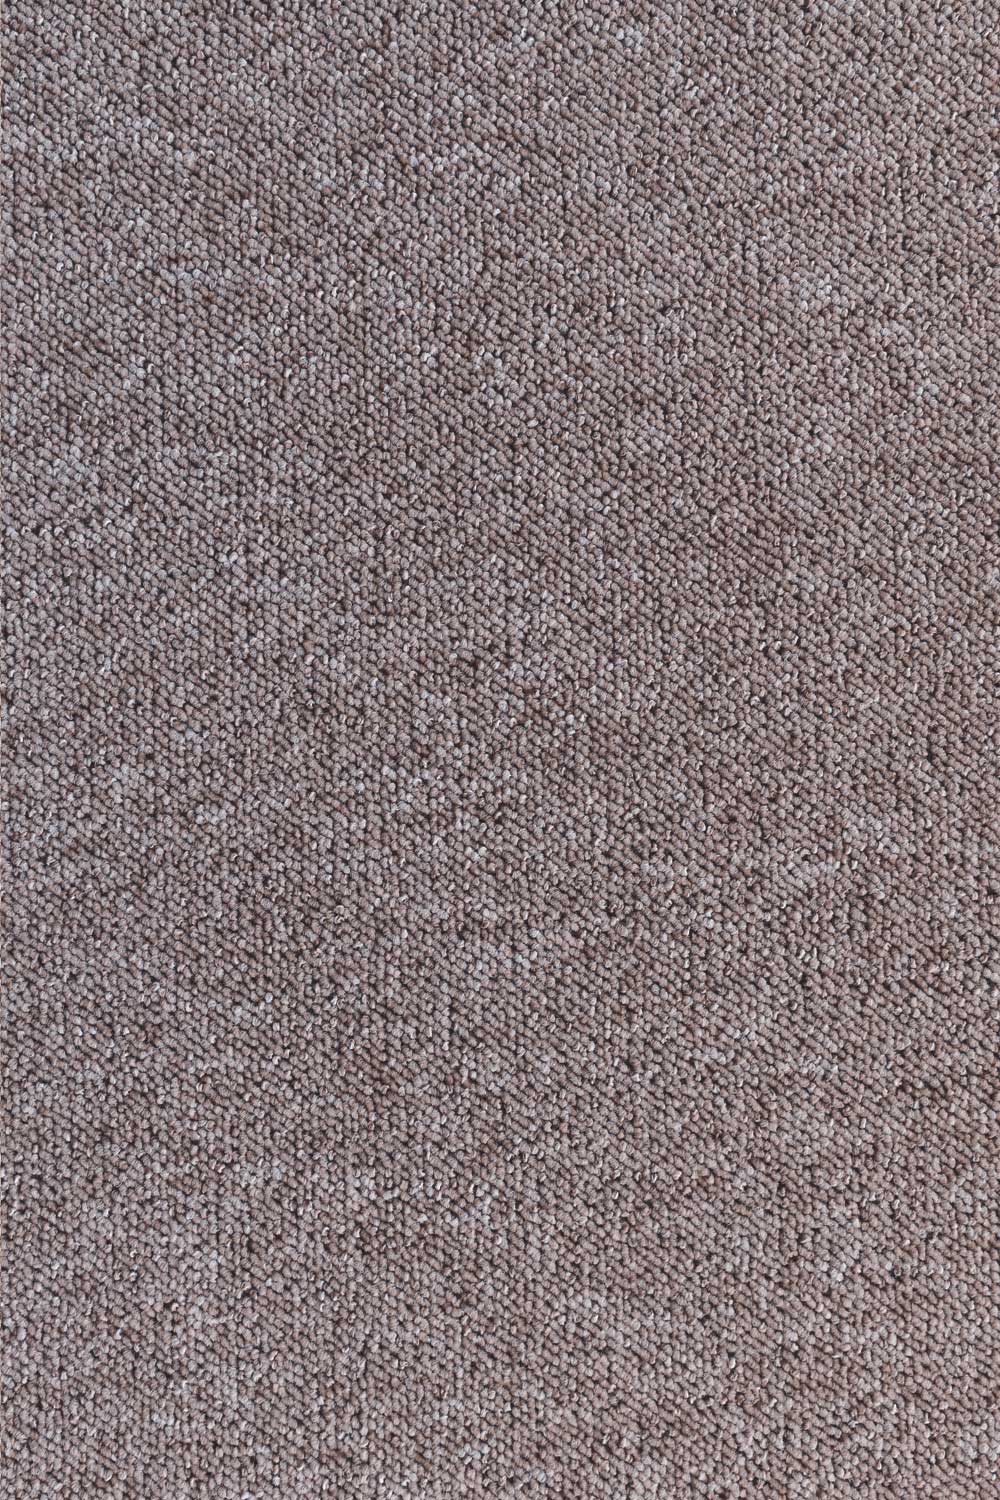 Metrážny koberec ROBSON 1714